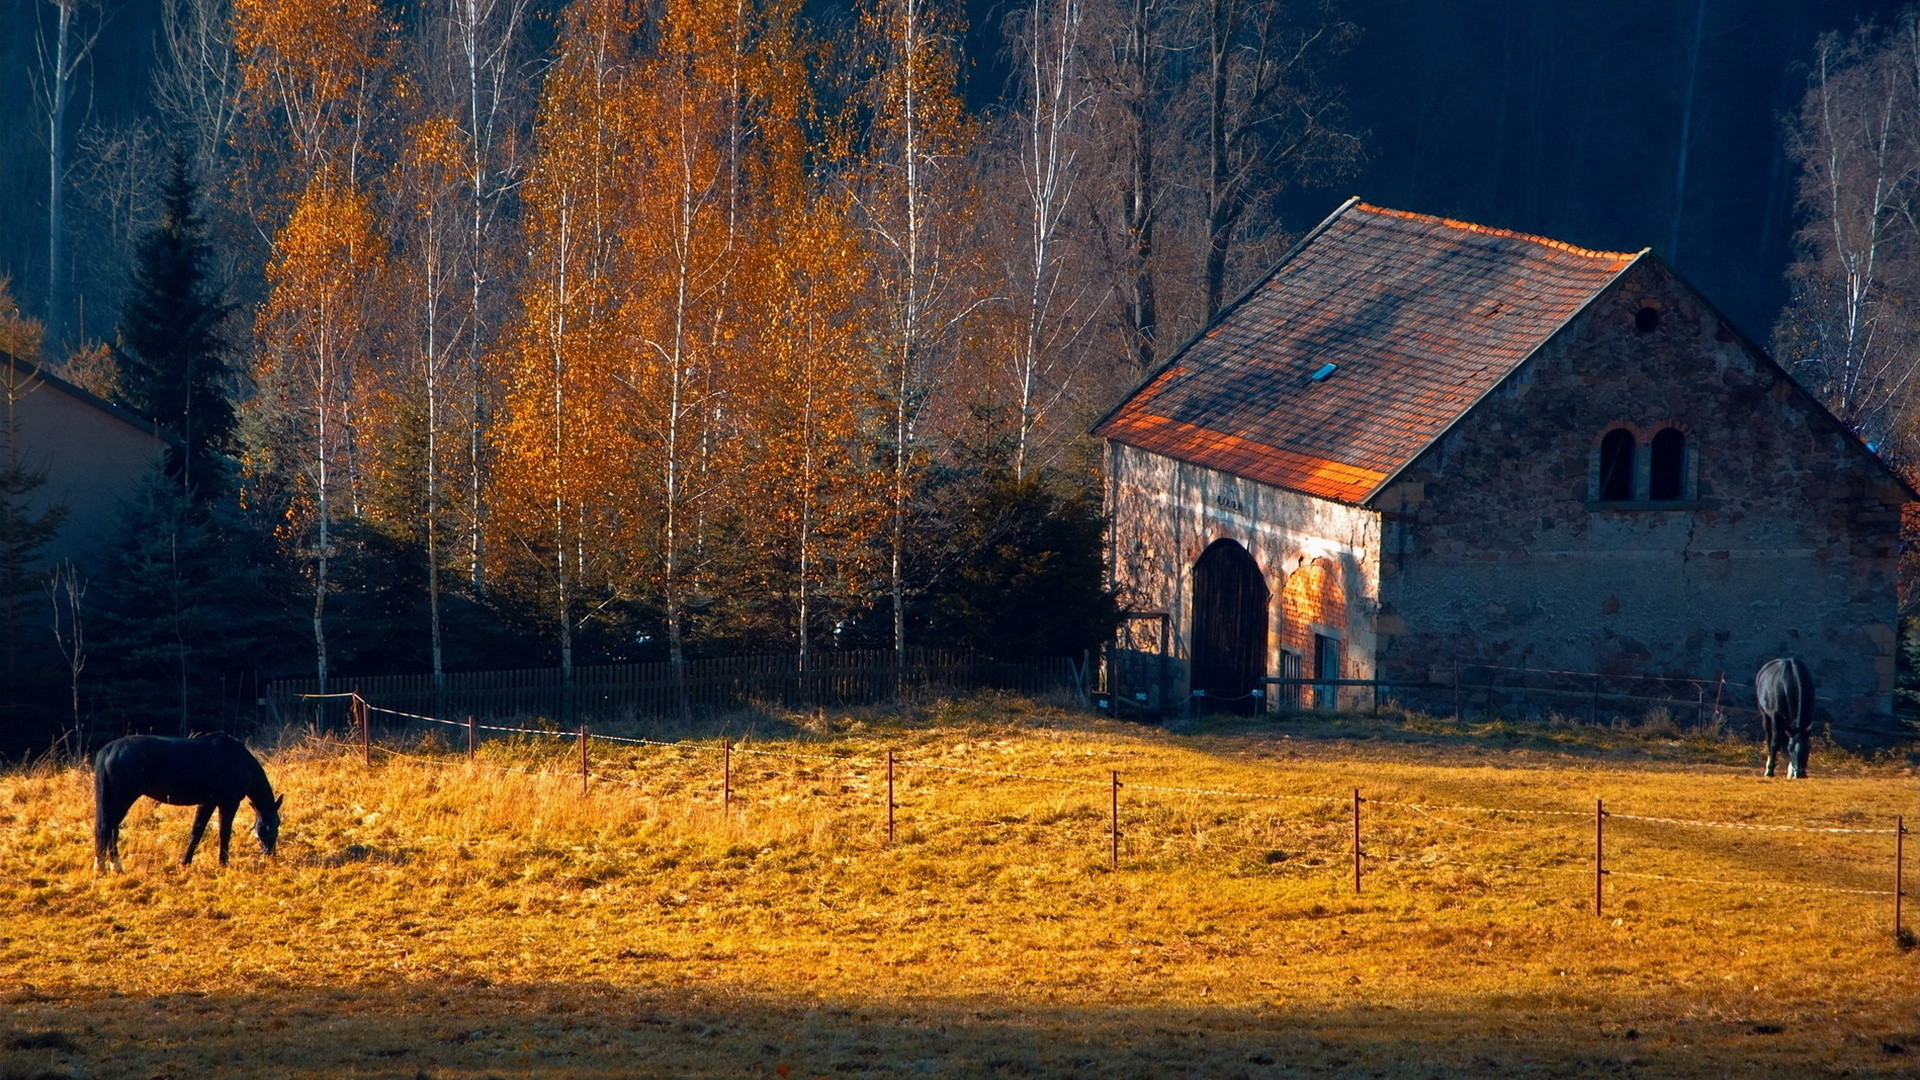 1920x1080 Horses rustic farm barn landscapes buildings autumn fall trees wallpaper |   | 31714 | WallpaperUP